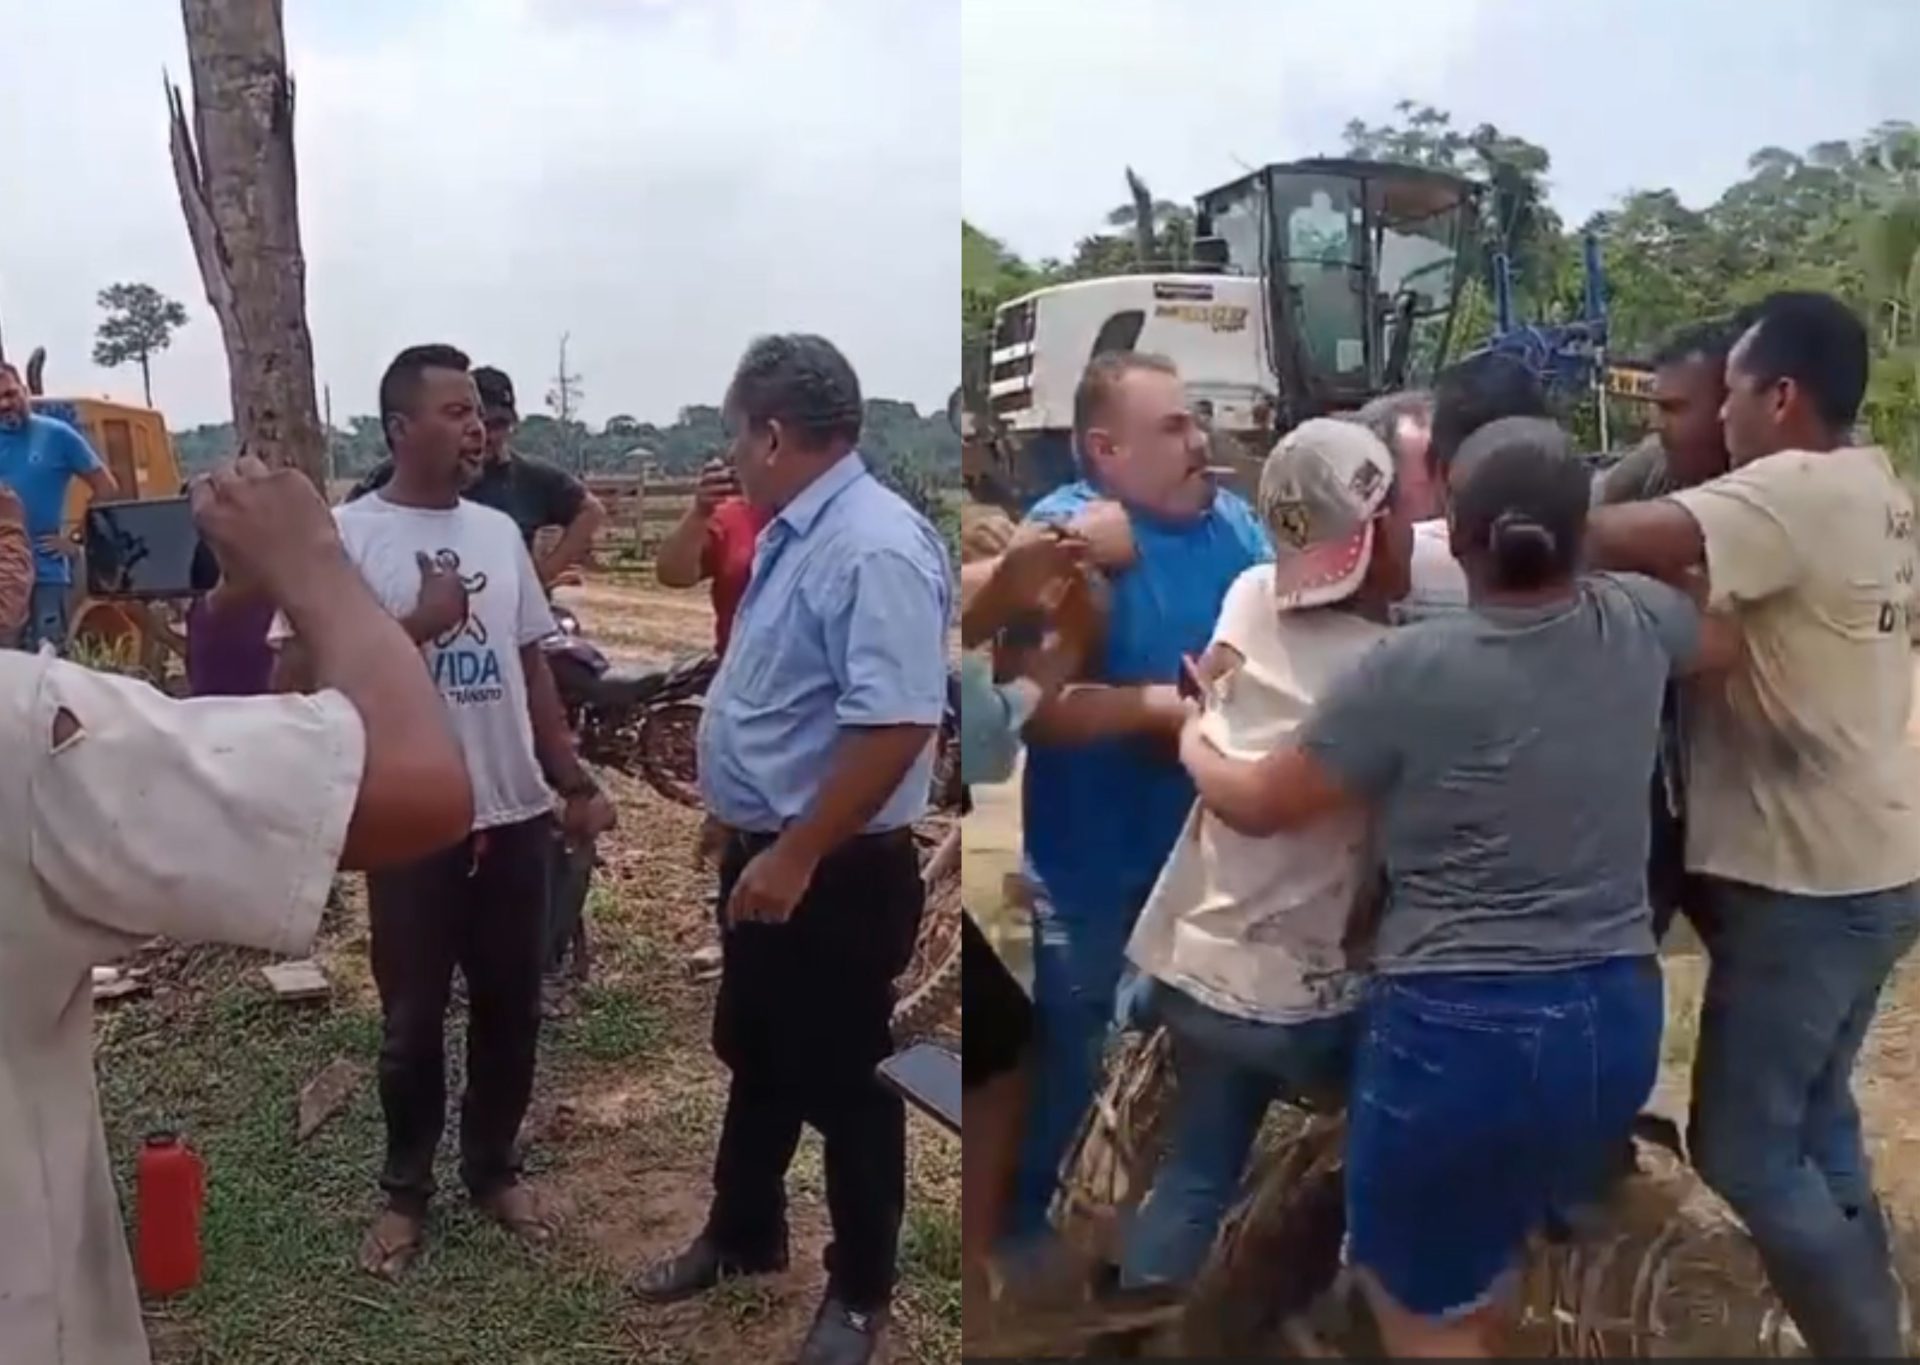 VÍDEO: Prefeito é agredido em conflito com produtor rural no interior do Acre